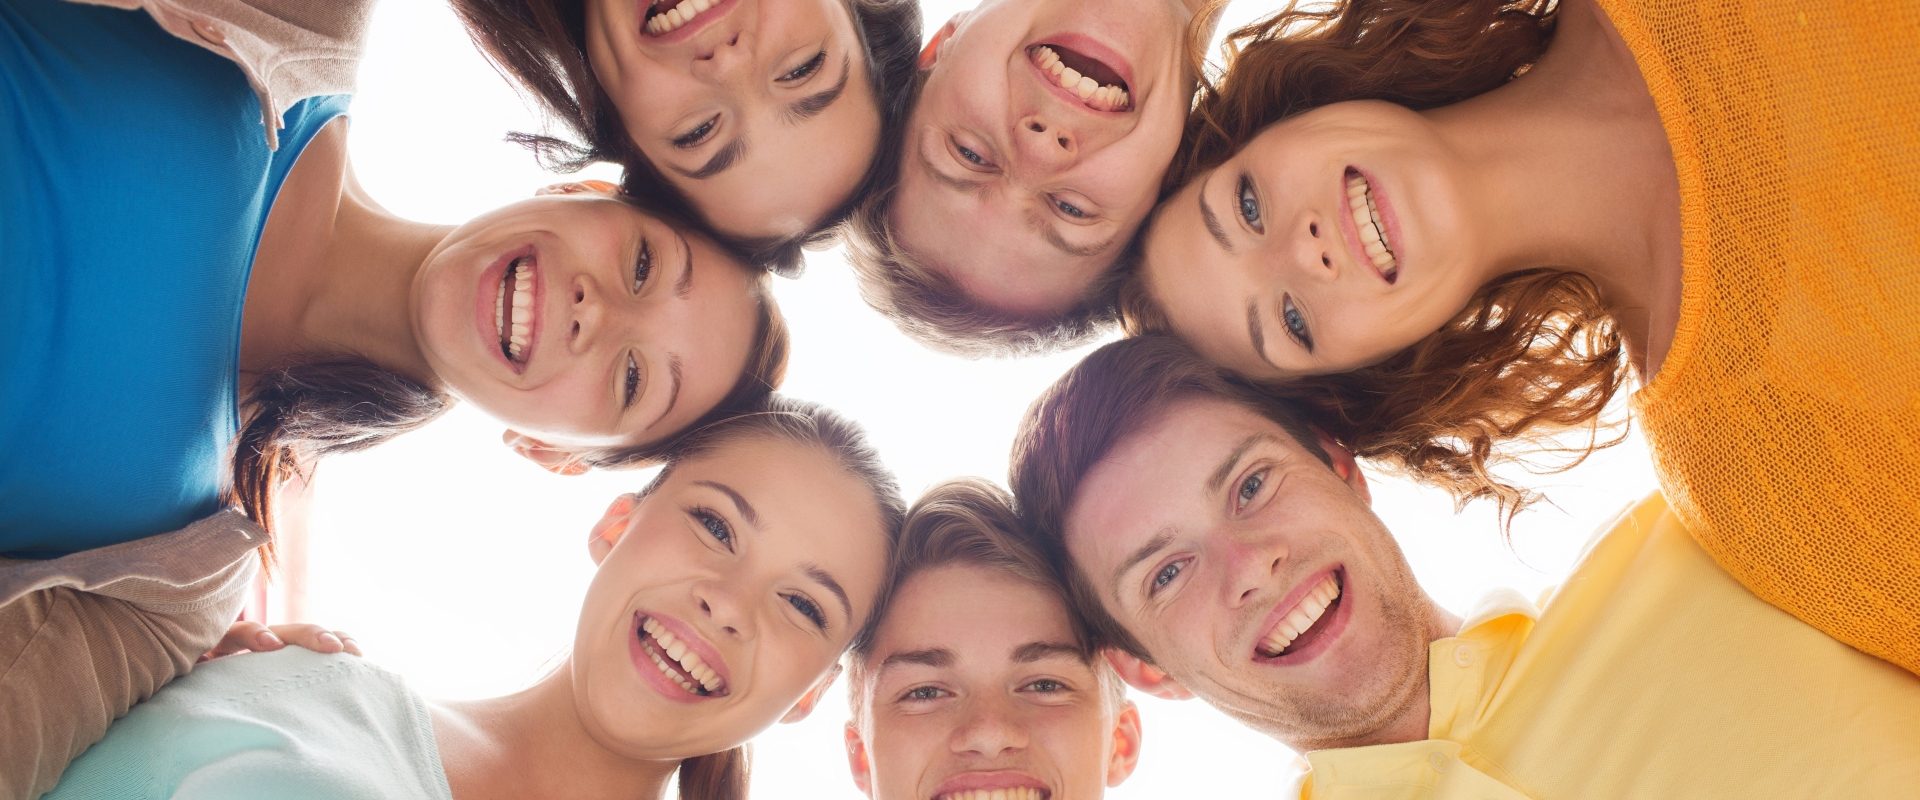 Homeopatia, leki homeopatyczne dla dzieci i dla nastolatków. Grupa uśmiechniętych nastolatków pochyla się w kręgu i patrzy w dół do obiektywu.